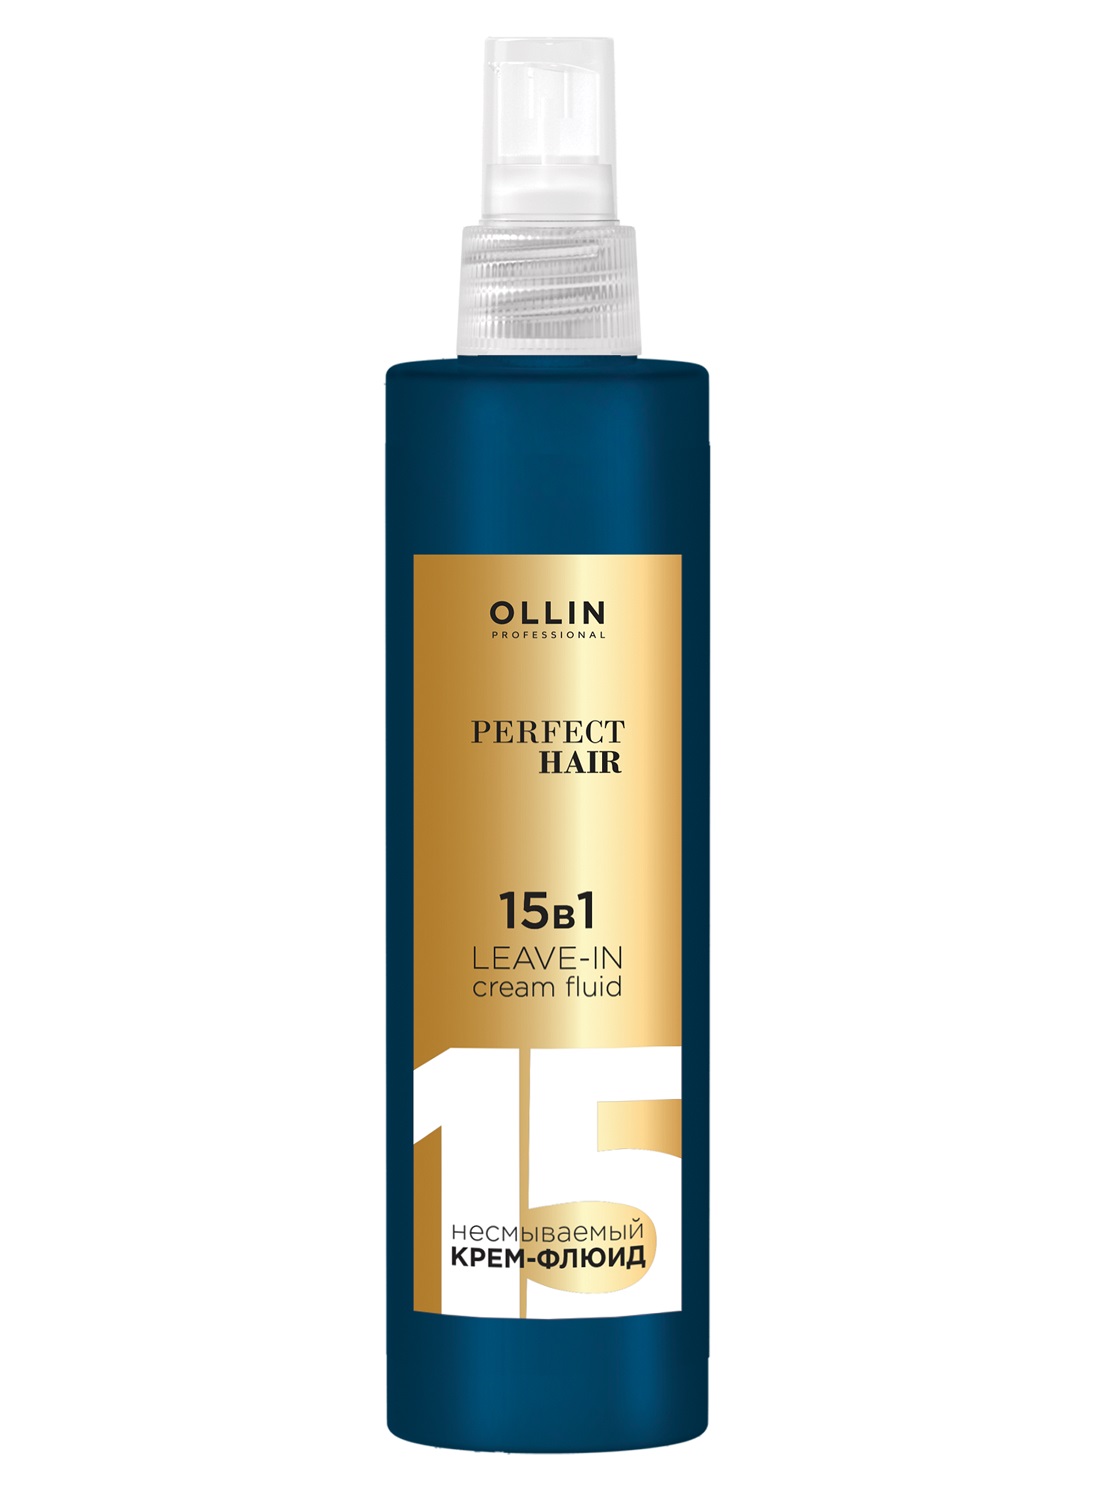 Ollin Professional Несмываемый крем-флюид, 250 мл (Ollin Professional, Perfect Hair) несмываемый уход greenini professional крем от секущихся кончиков для волос с кератином здоровый вид и мягкость